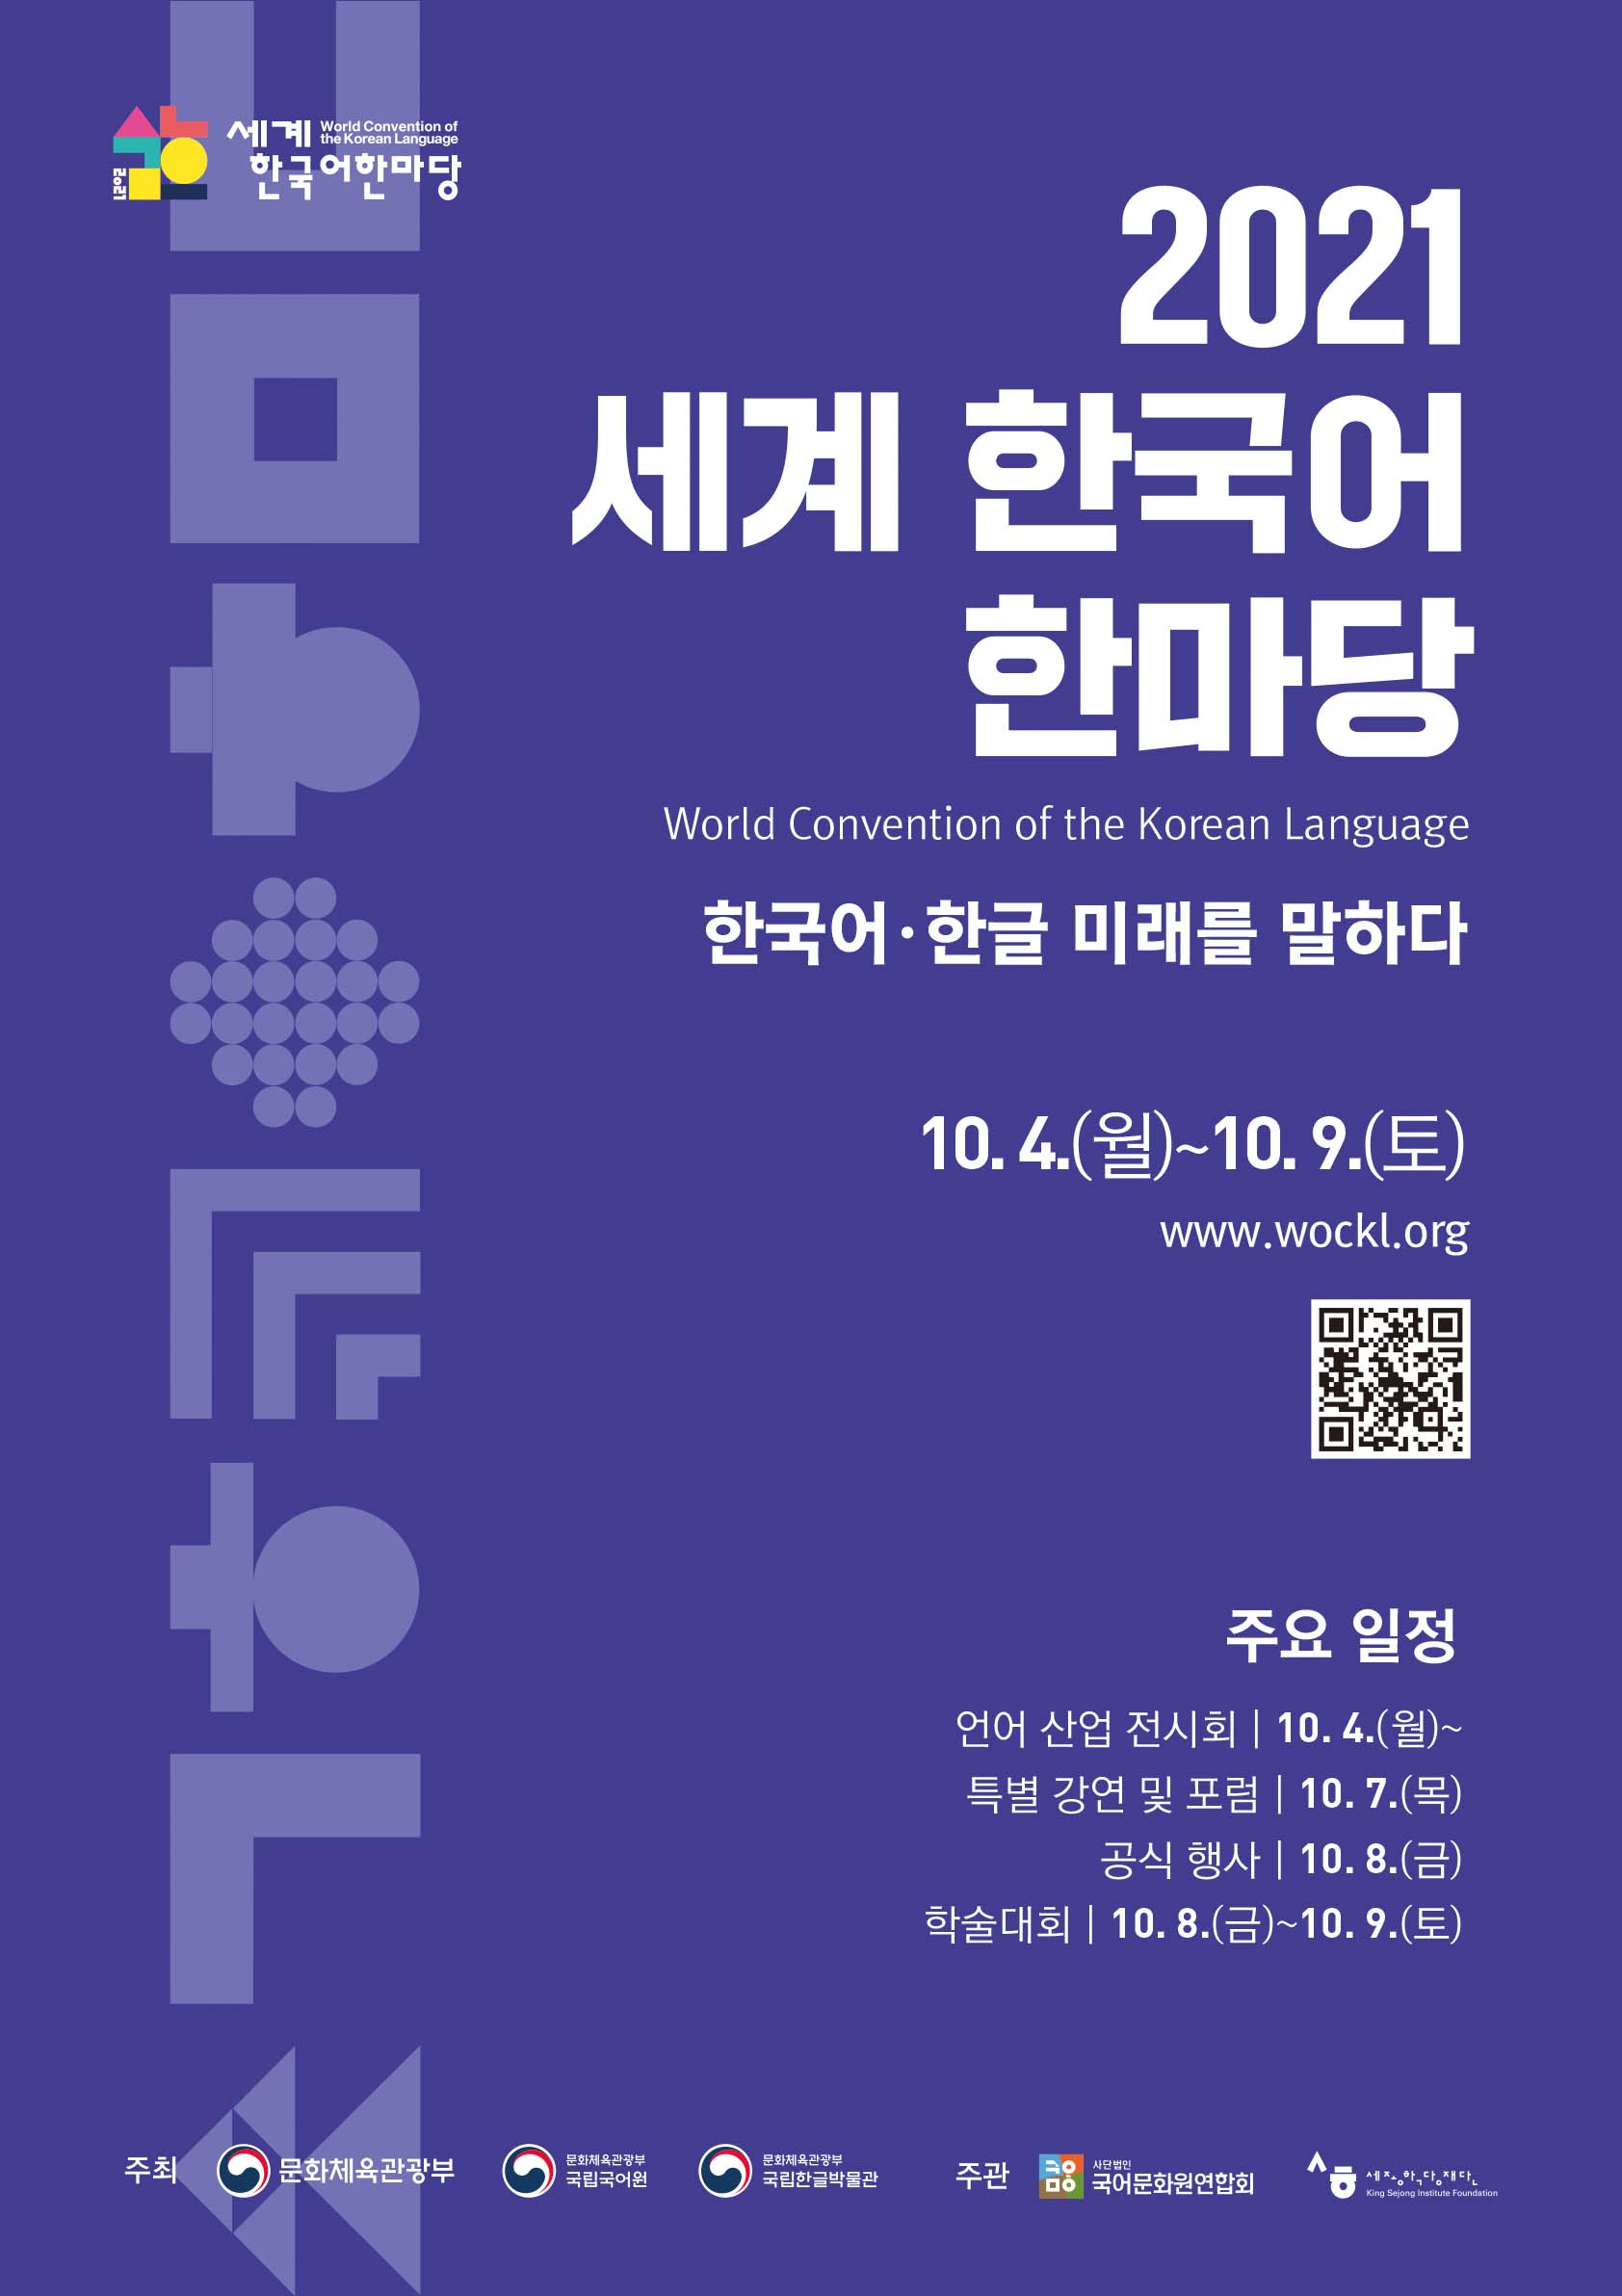 학회/행사/기타 안내 상세보기(2021 세계 한국어 한마당 국제 학술대회 안내) | 국립국어원